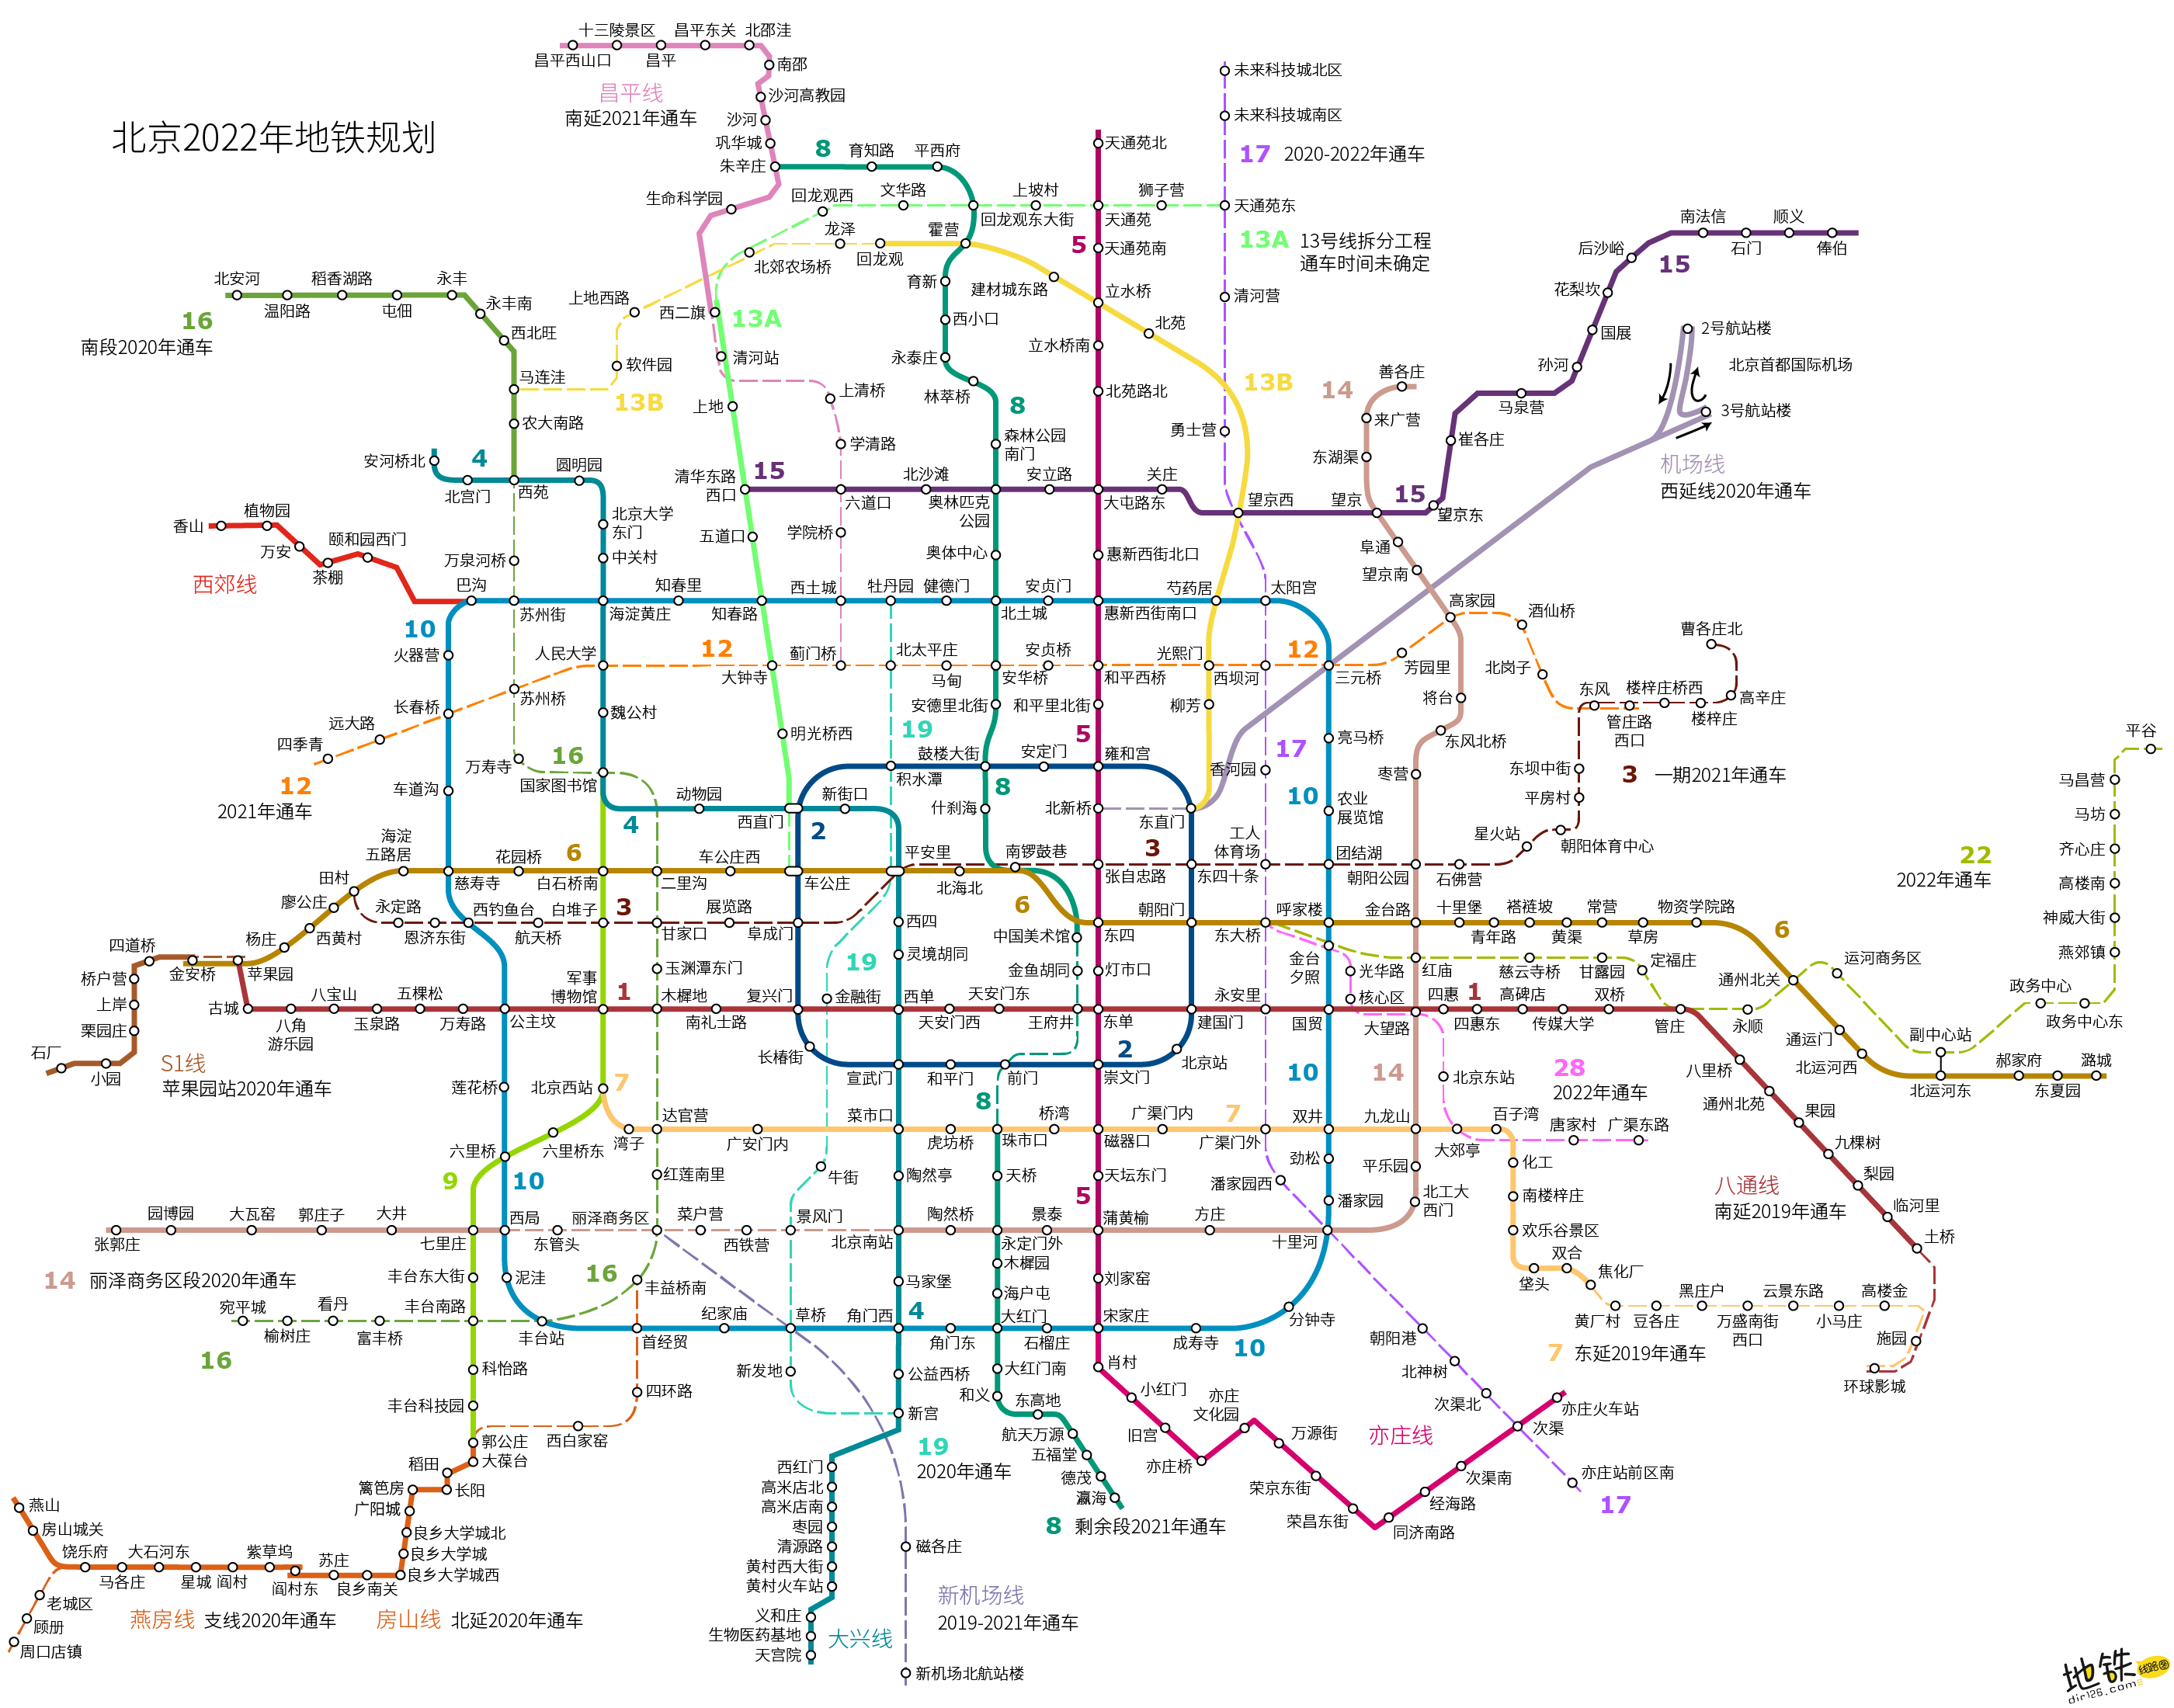 北京在修的地铁线路图图片